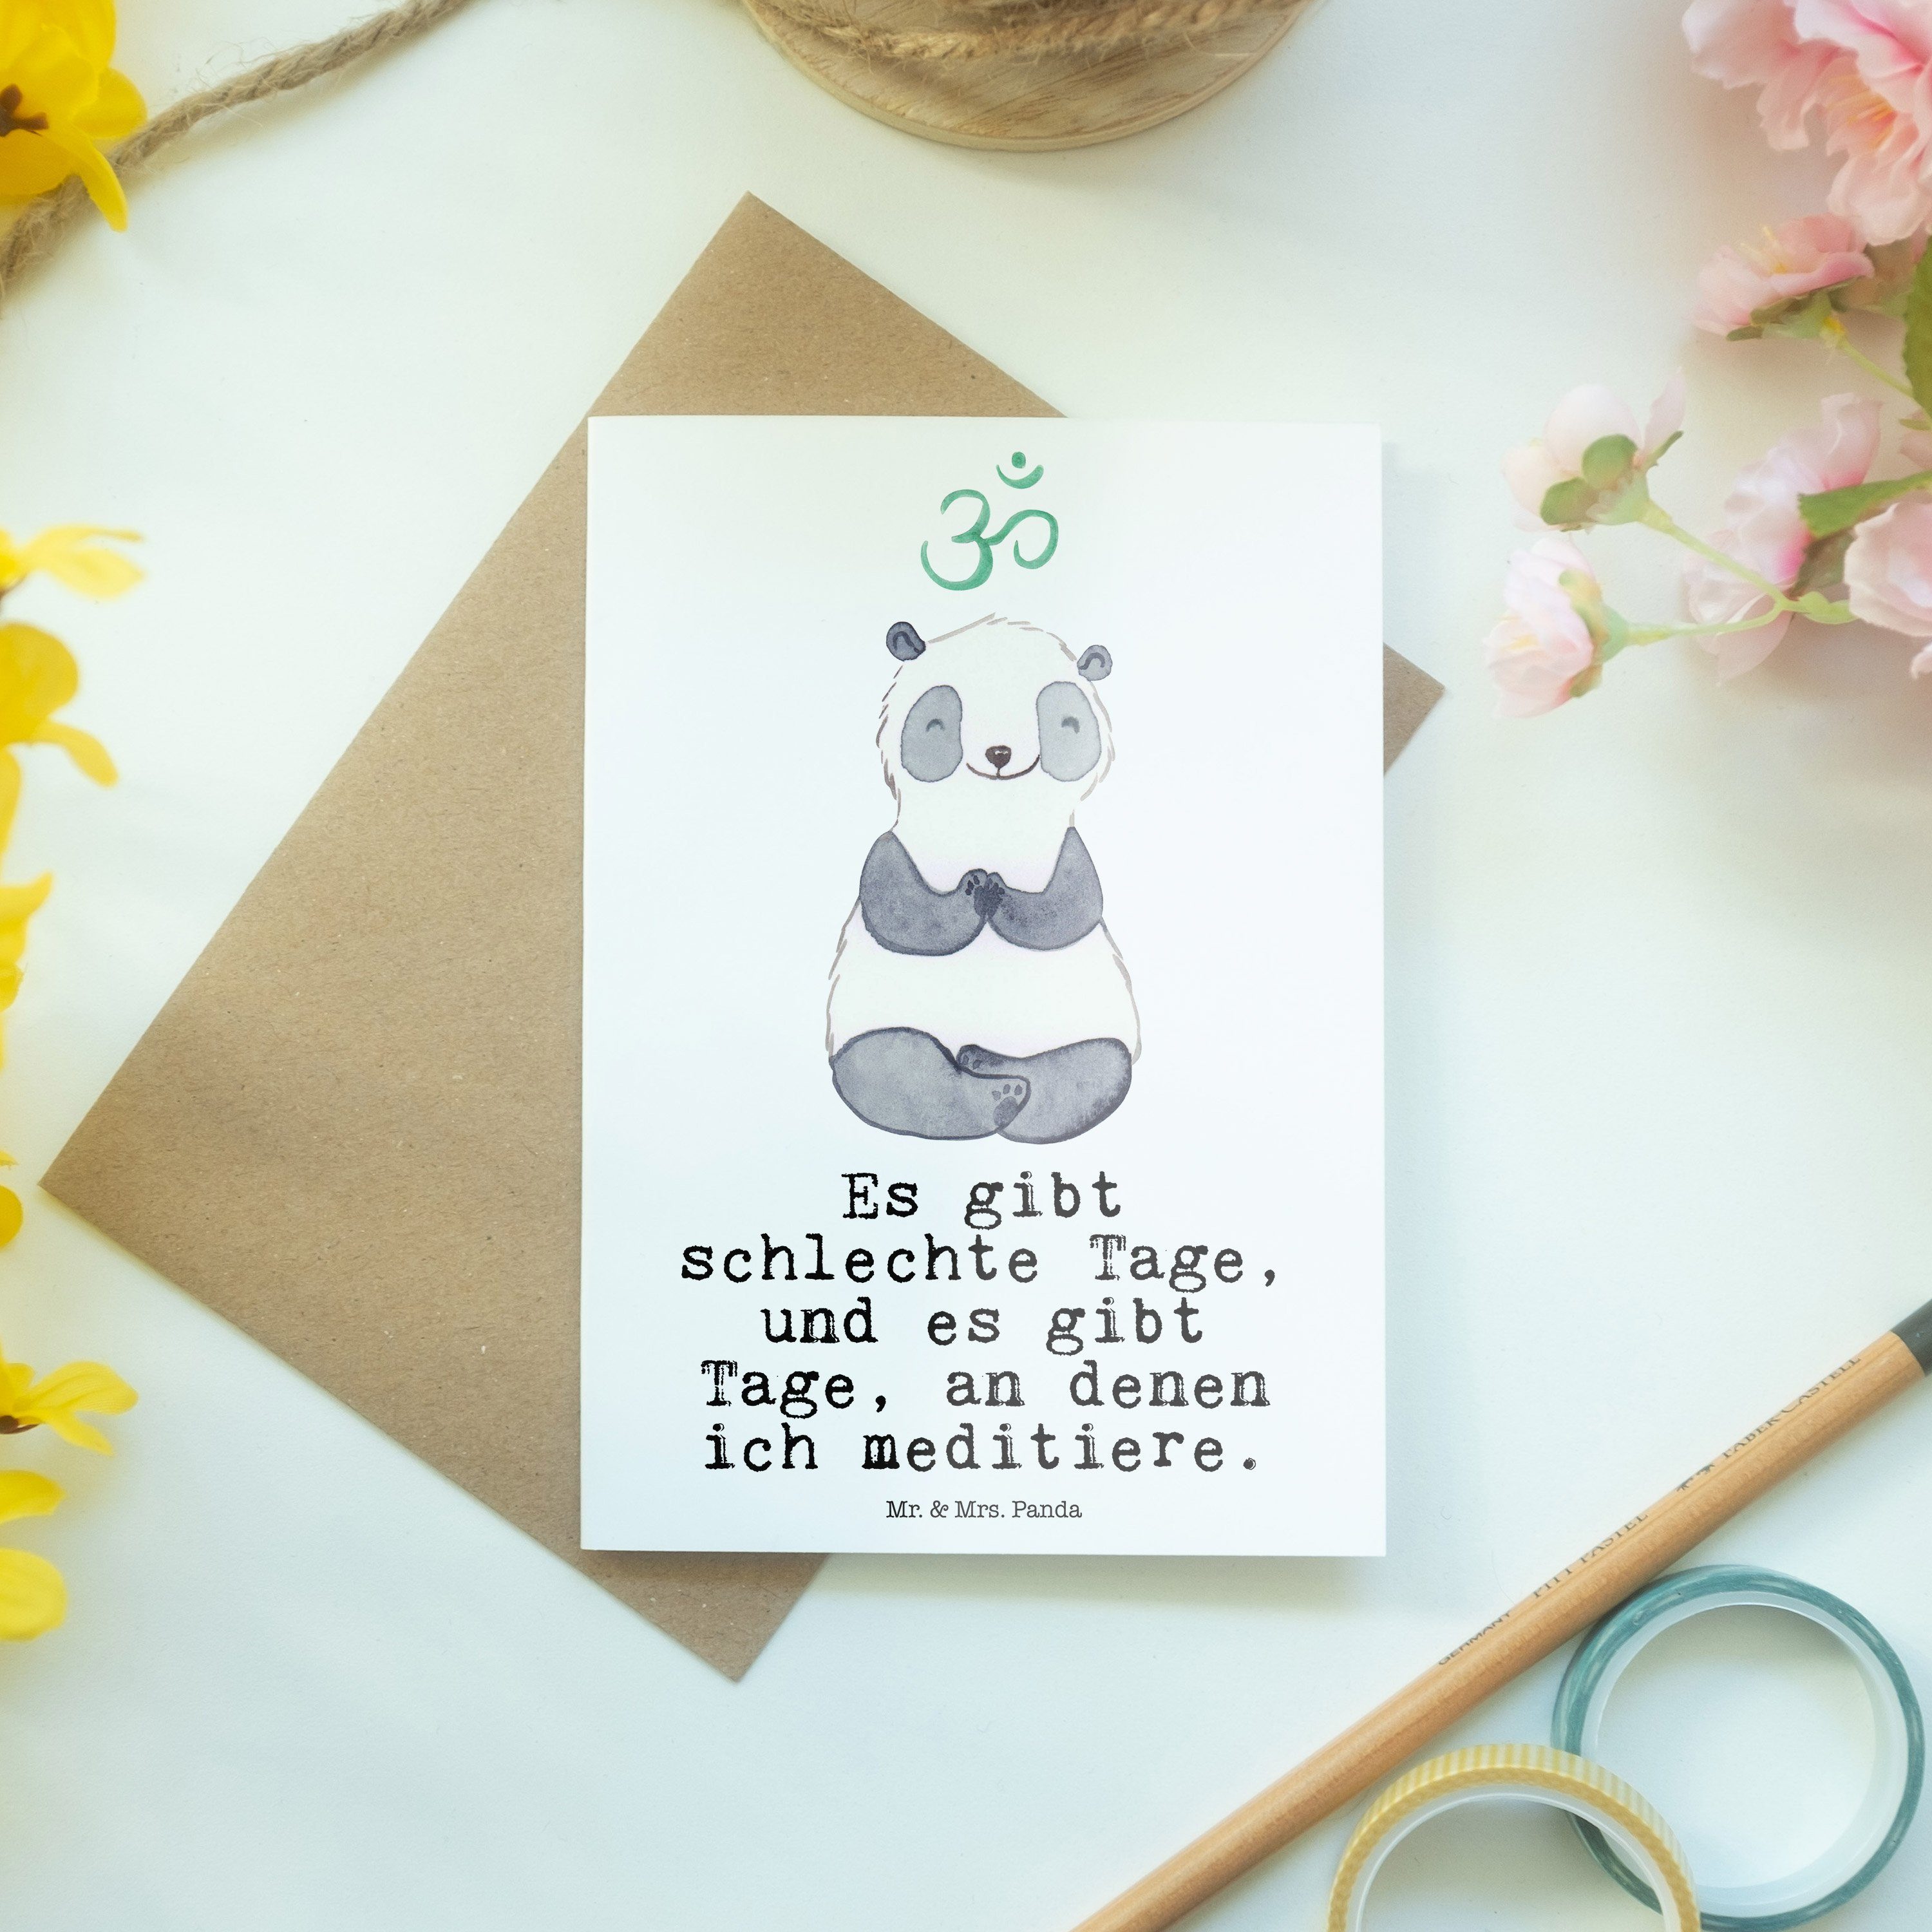 Mr. & Mrs. Panda - Hobby, Ausze Geschenk, Hochzeitskarte, Meditieren Grußkarte Panda Tage - Weiß